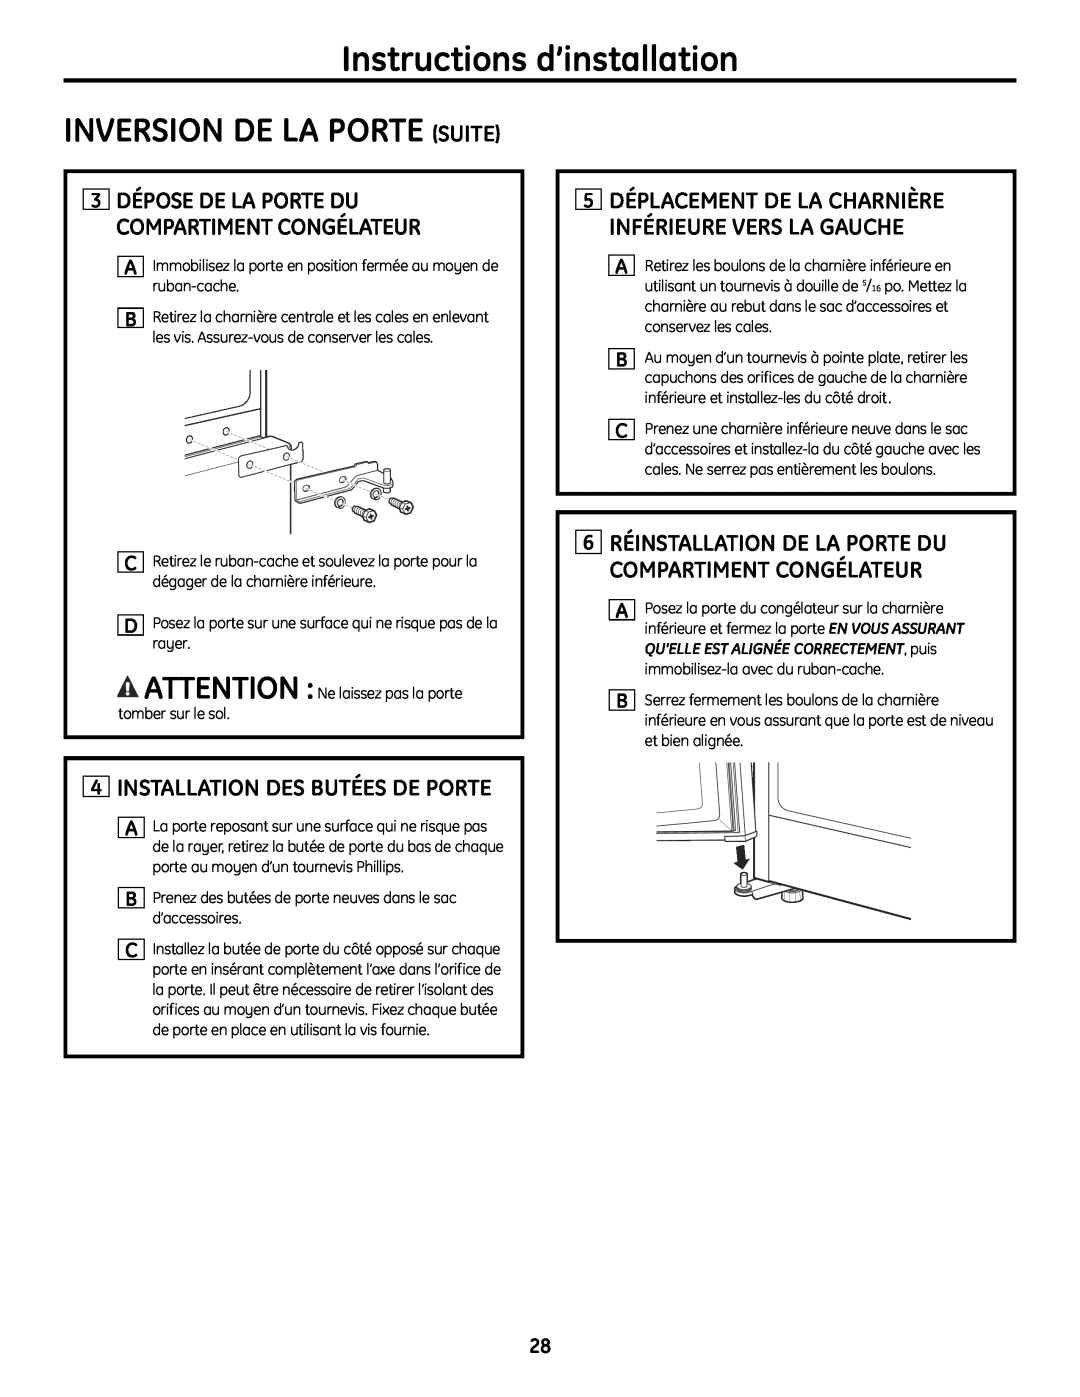 GE MBC12 manual Inversion De La Porte Suite, 4INSTALLATION DES BUTÉES DE PORTE, Instructions d’installation 